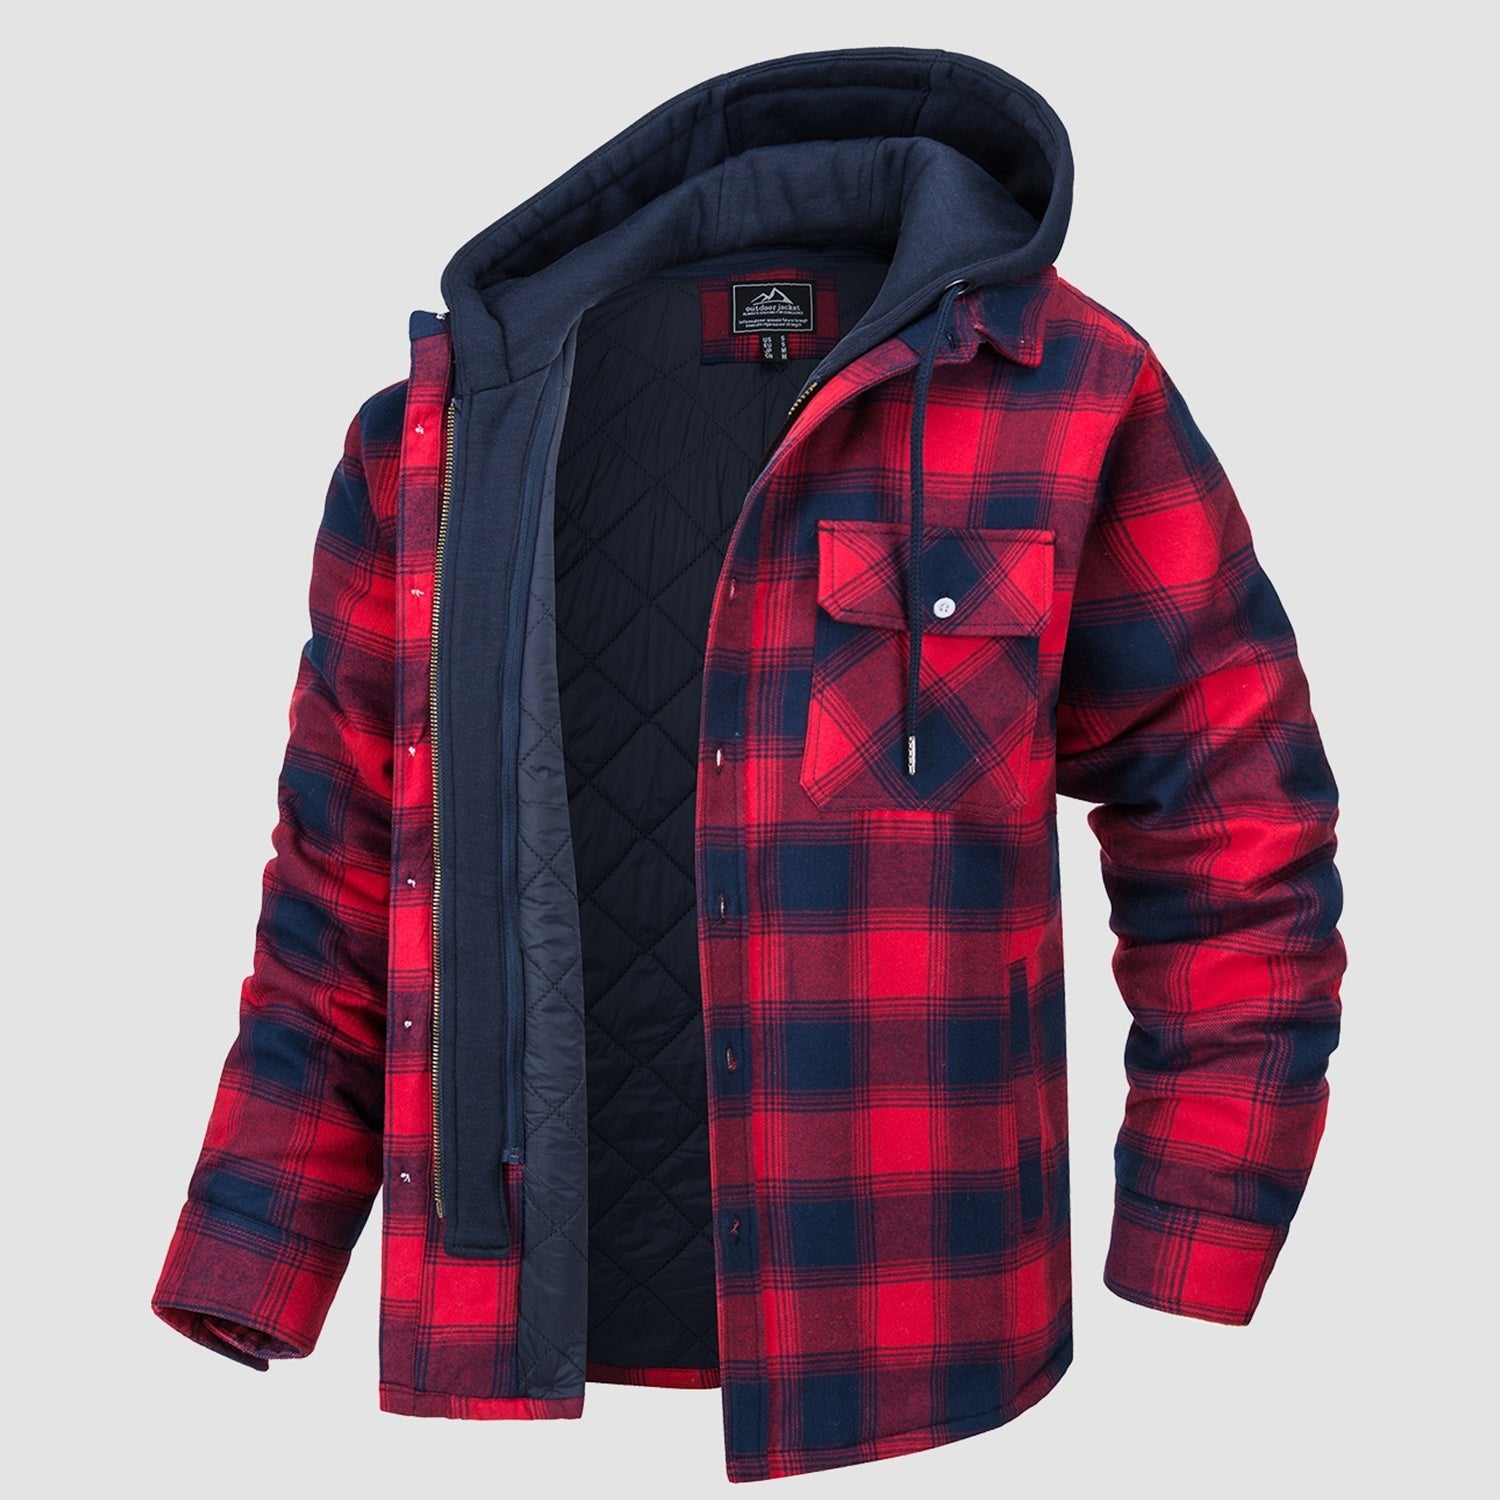 Heavy Thick Flannel Plaid Jacket Sherpa Fleece Lined Hoodies for Men Zip Up  Winter Warm Coat Buffalo Zipper Sweatshirt